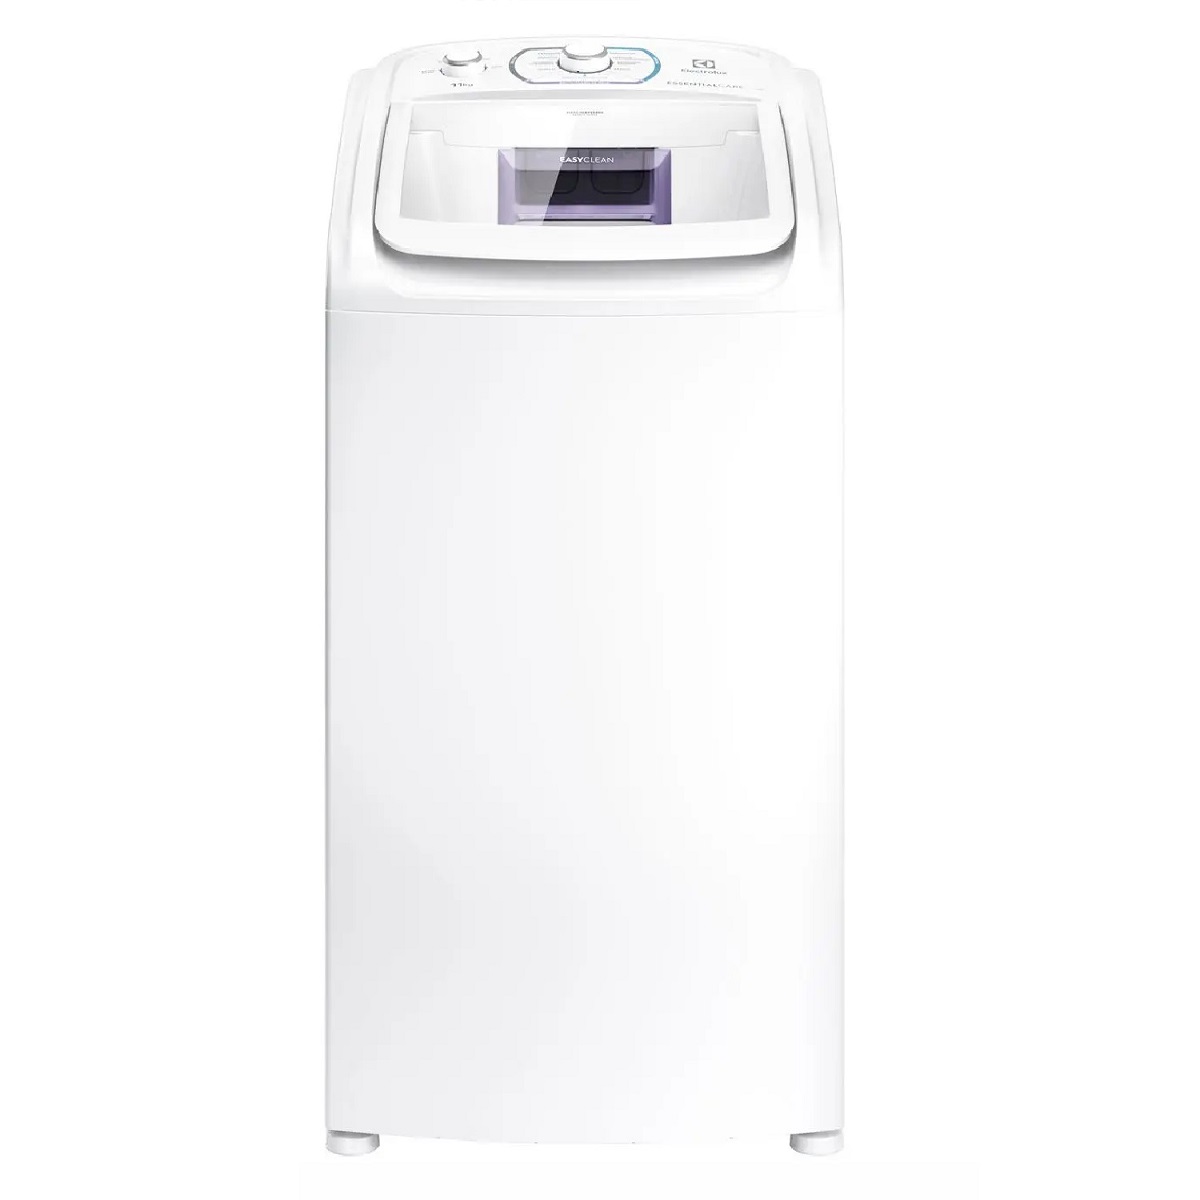 Máquina de Lavar Electrolux 11kg LES11 Essencial Care Easy Clean 220V, , large image number 0